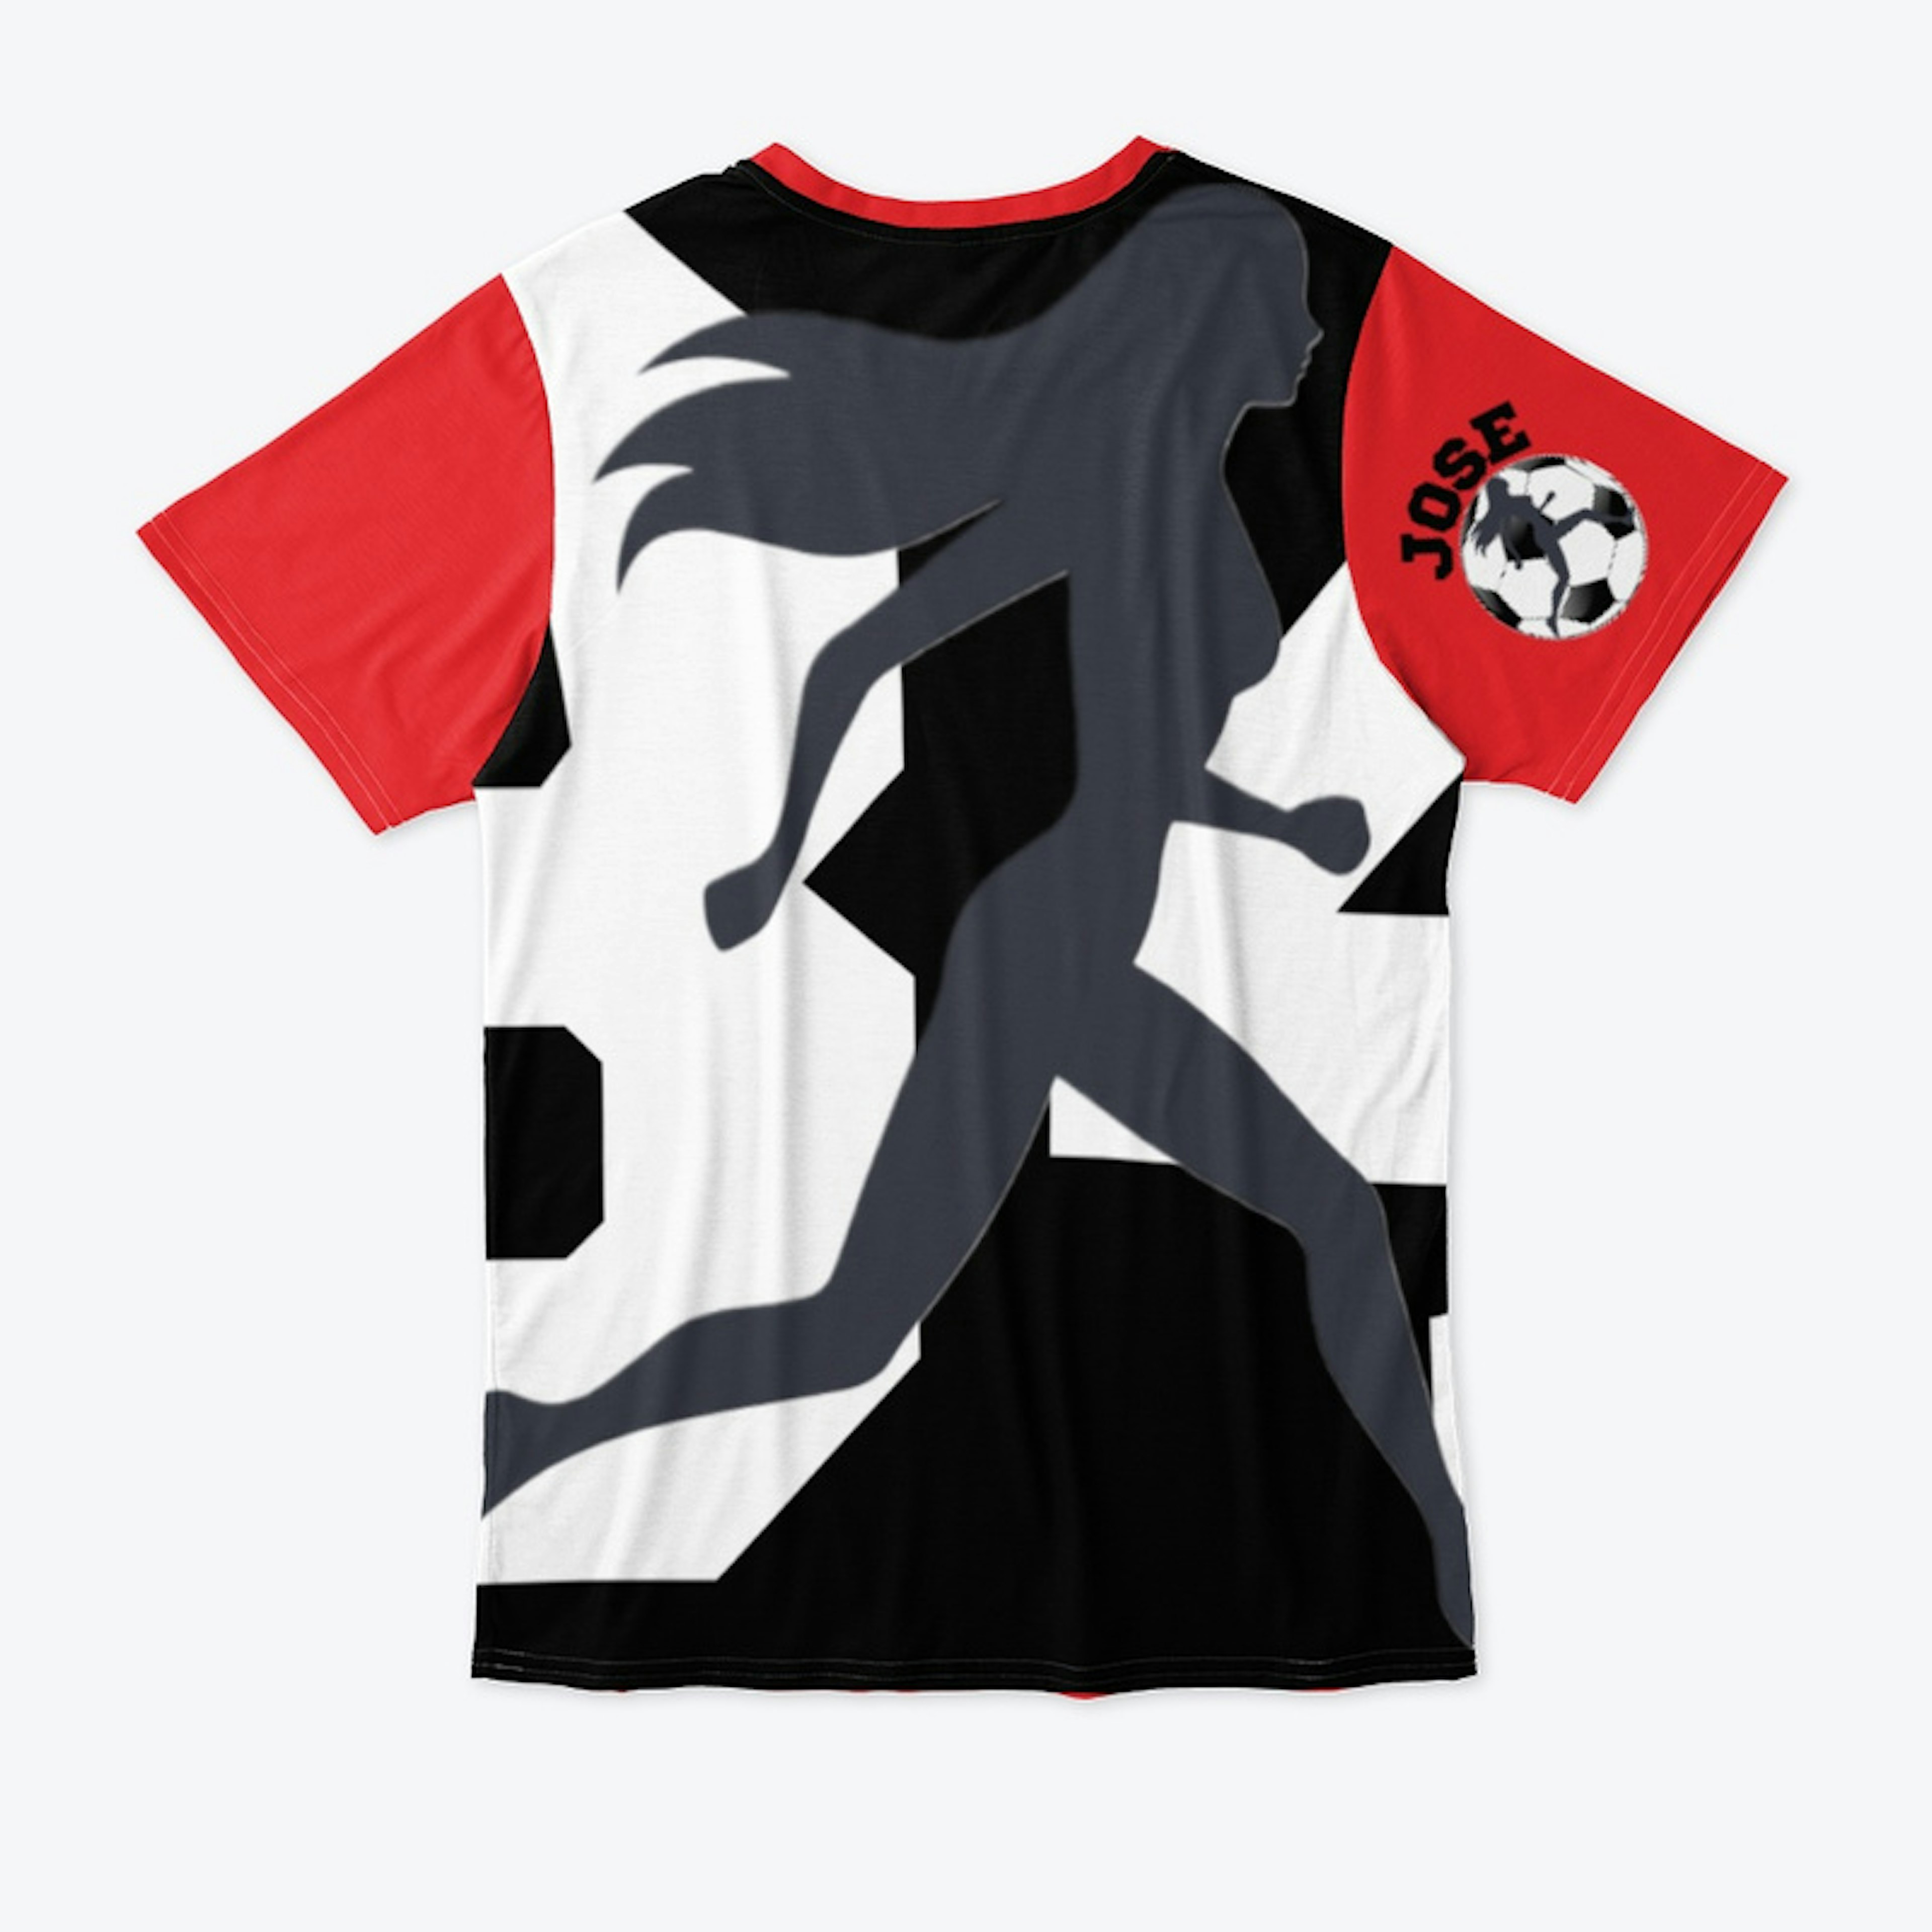 Soccer Design custom made